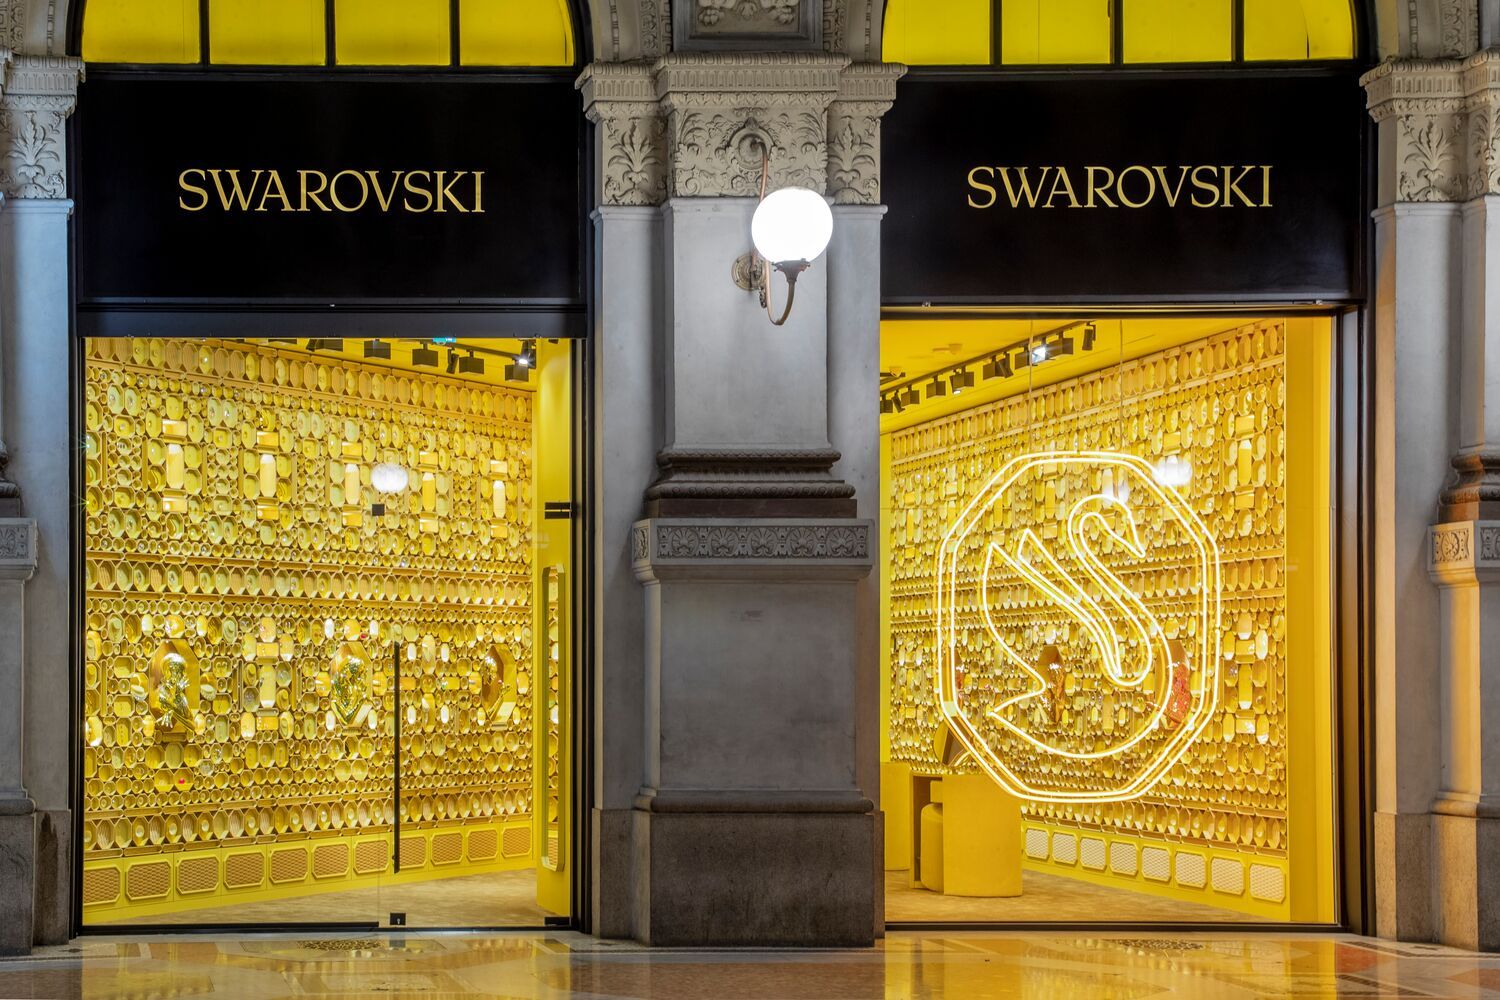 Swarovski brand identity